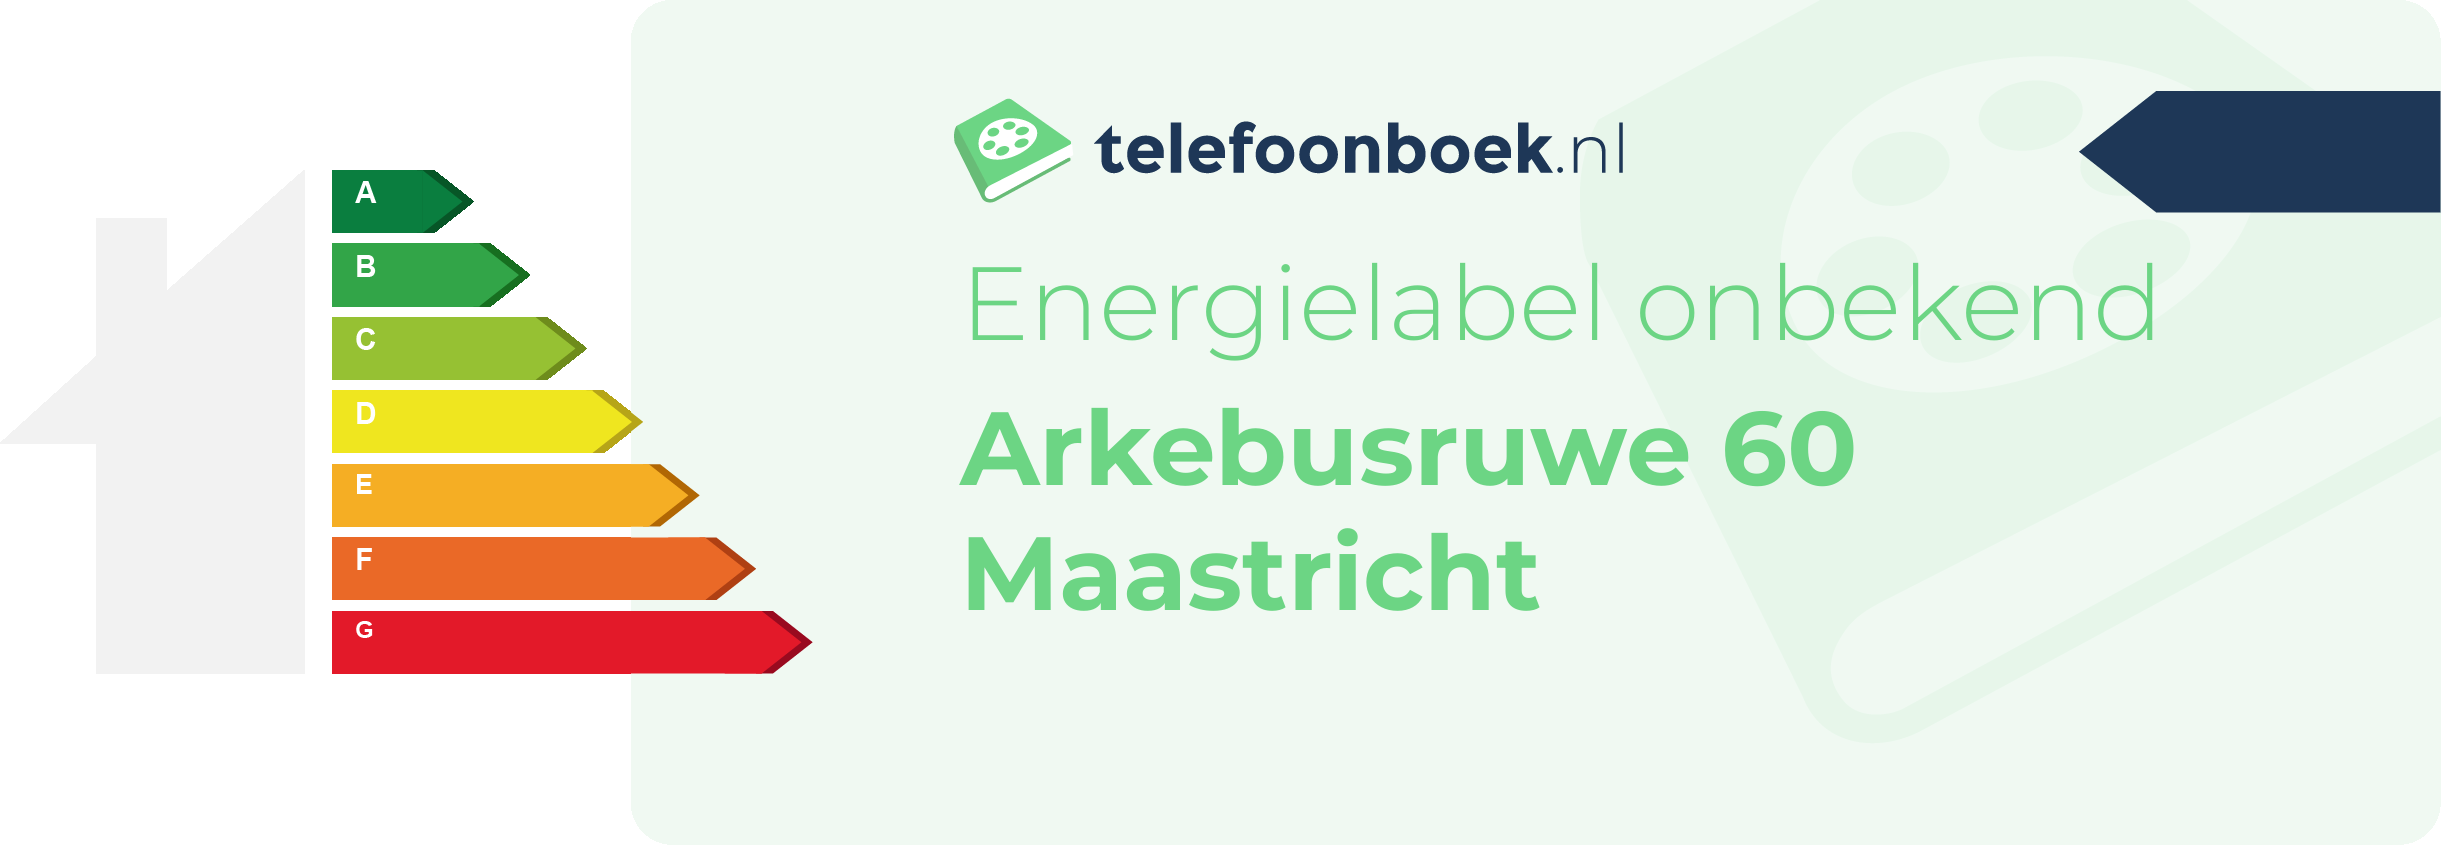 Energielabel Arkebusruwe 60 Maastricht